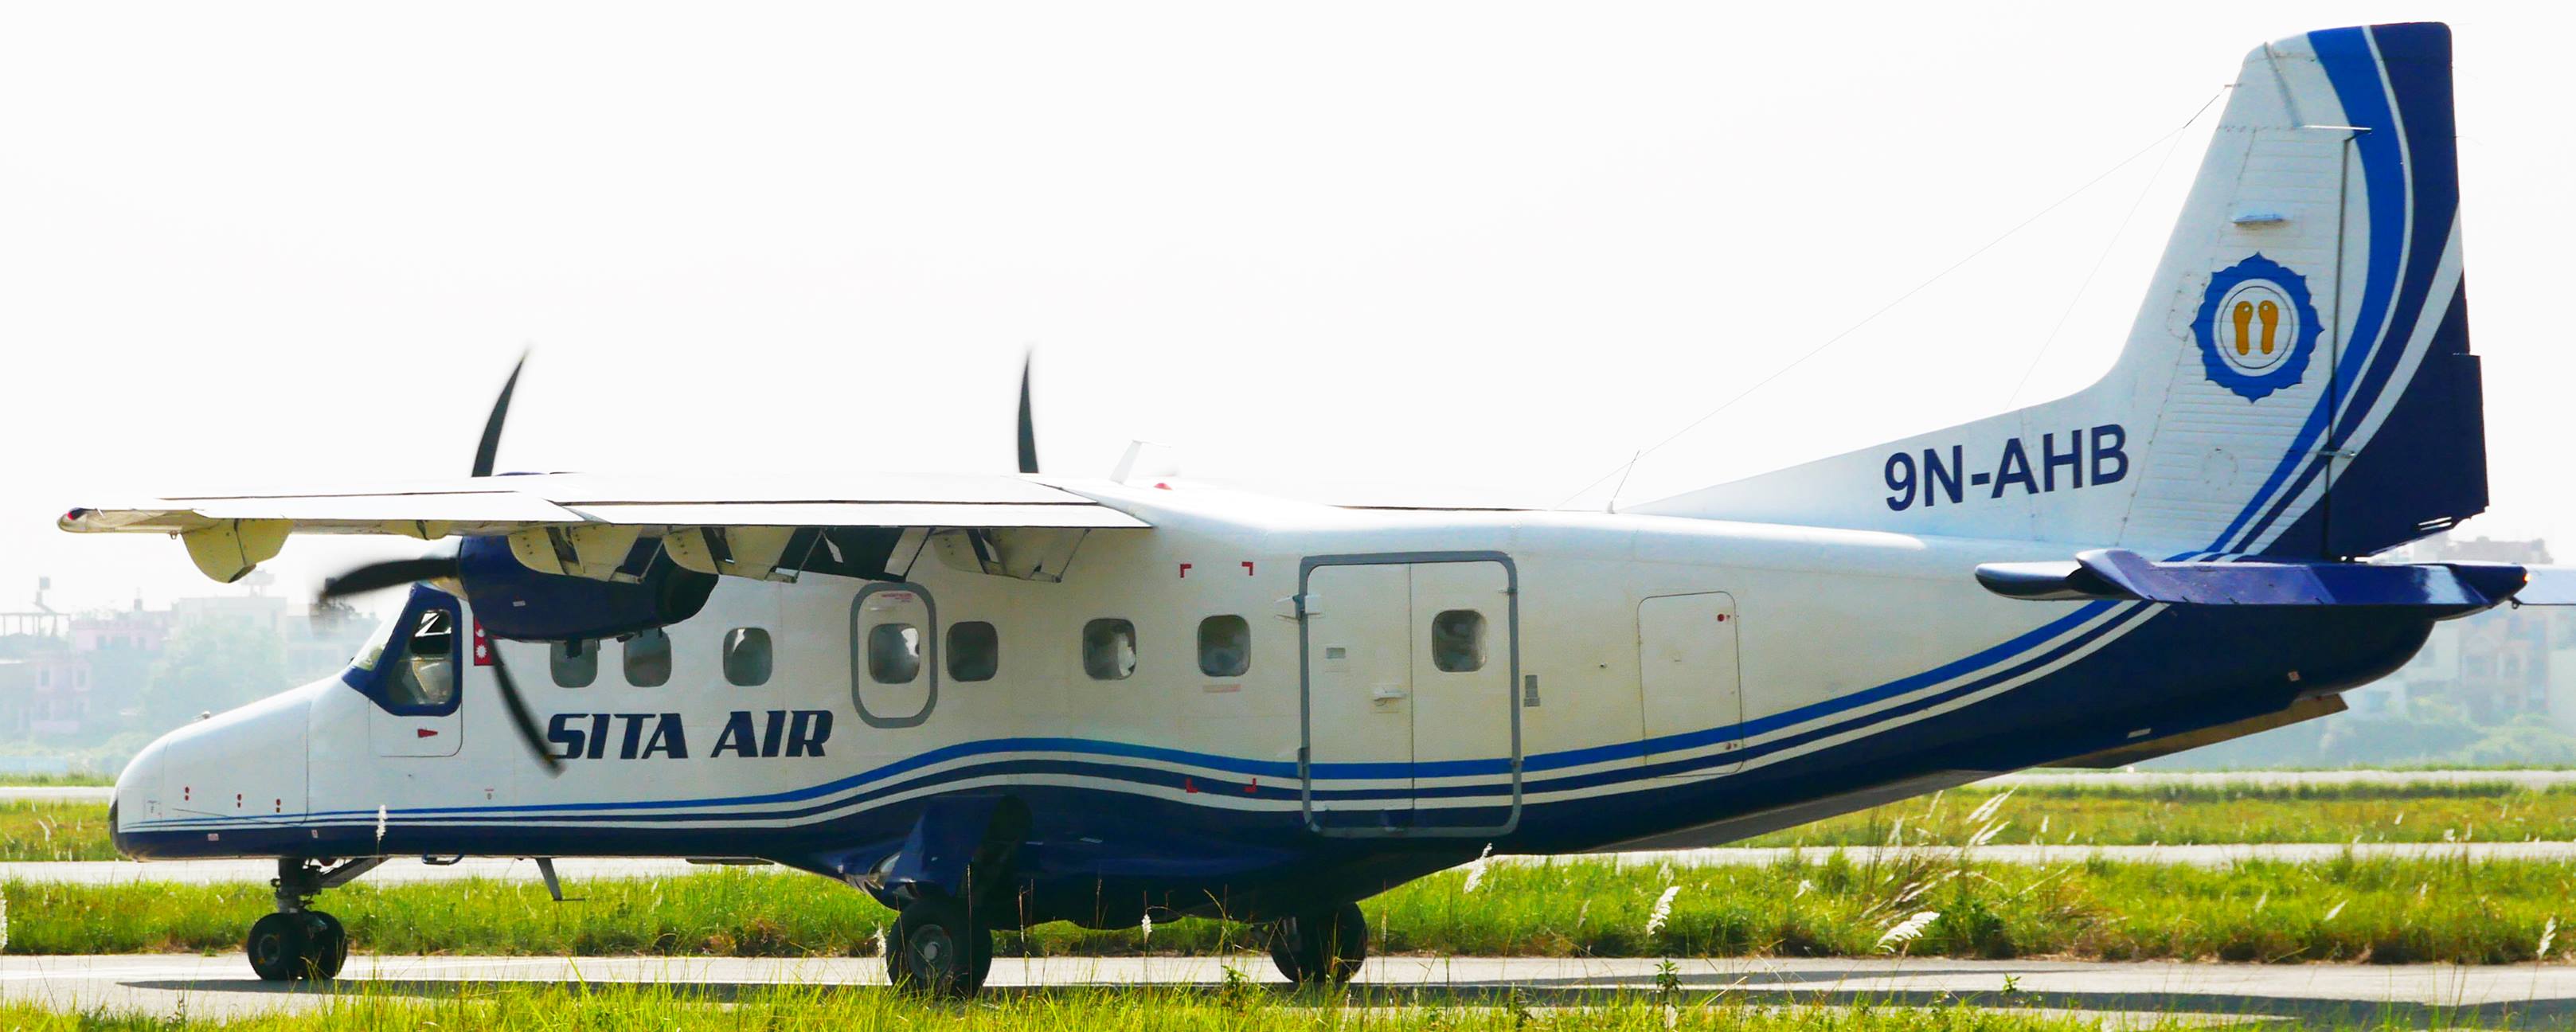 टरिगाउँ विमानस्थलमा सीताको परीक्षण उडान, रुख र चराले समस्या हुने क्याप्टेनको भनाइ